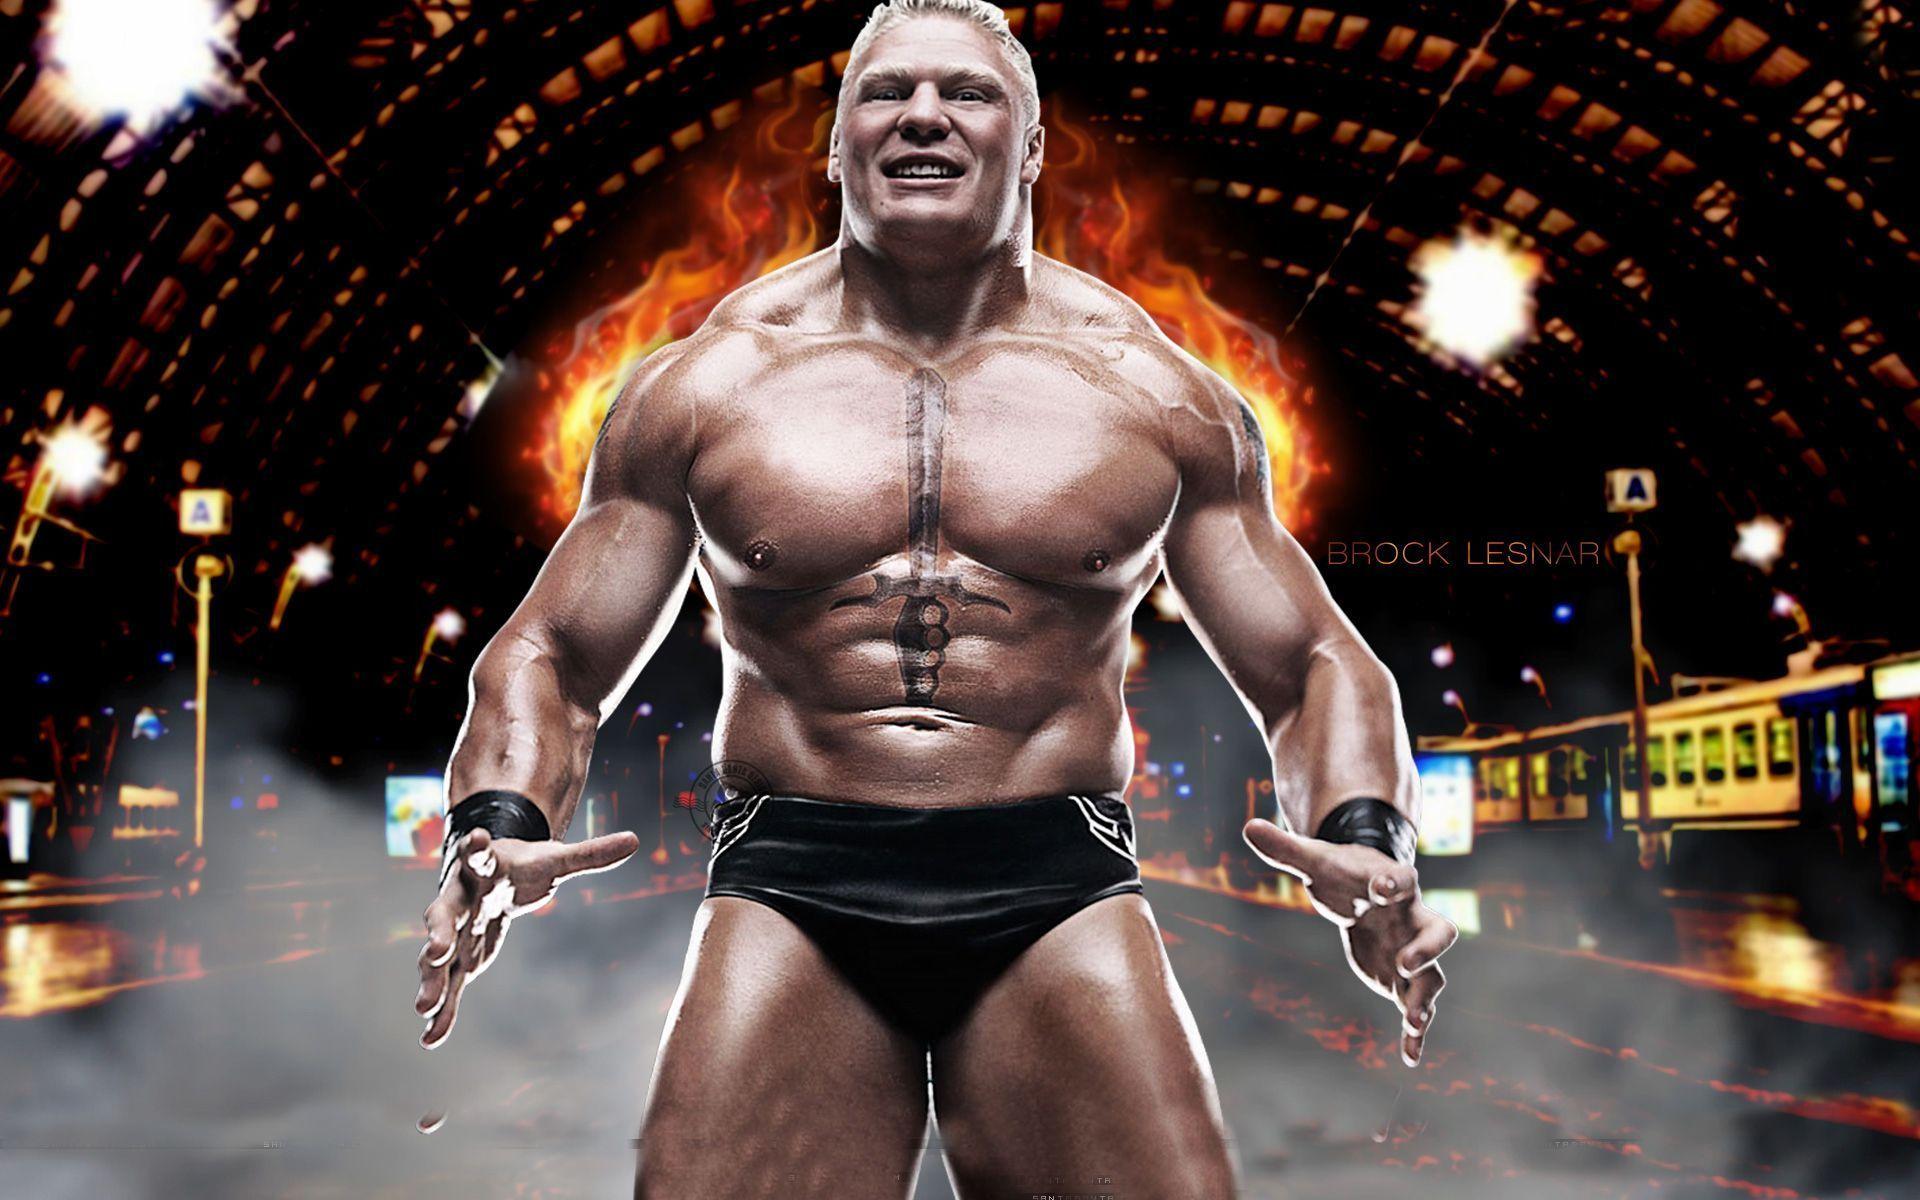 Brock Lesnar Hd Background 10. Brock Lesnar HD Background In 2018